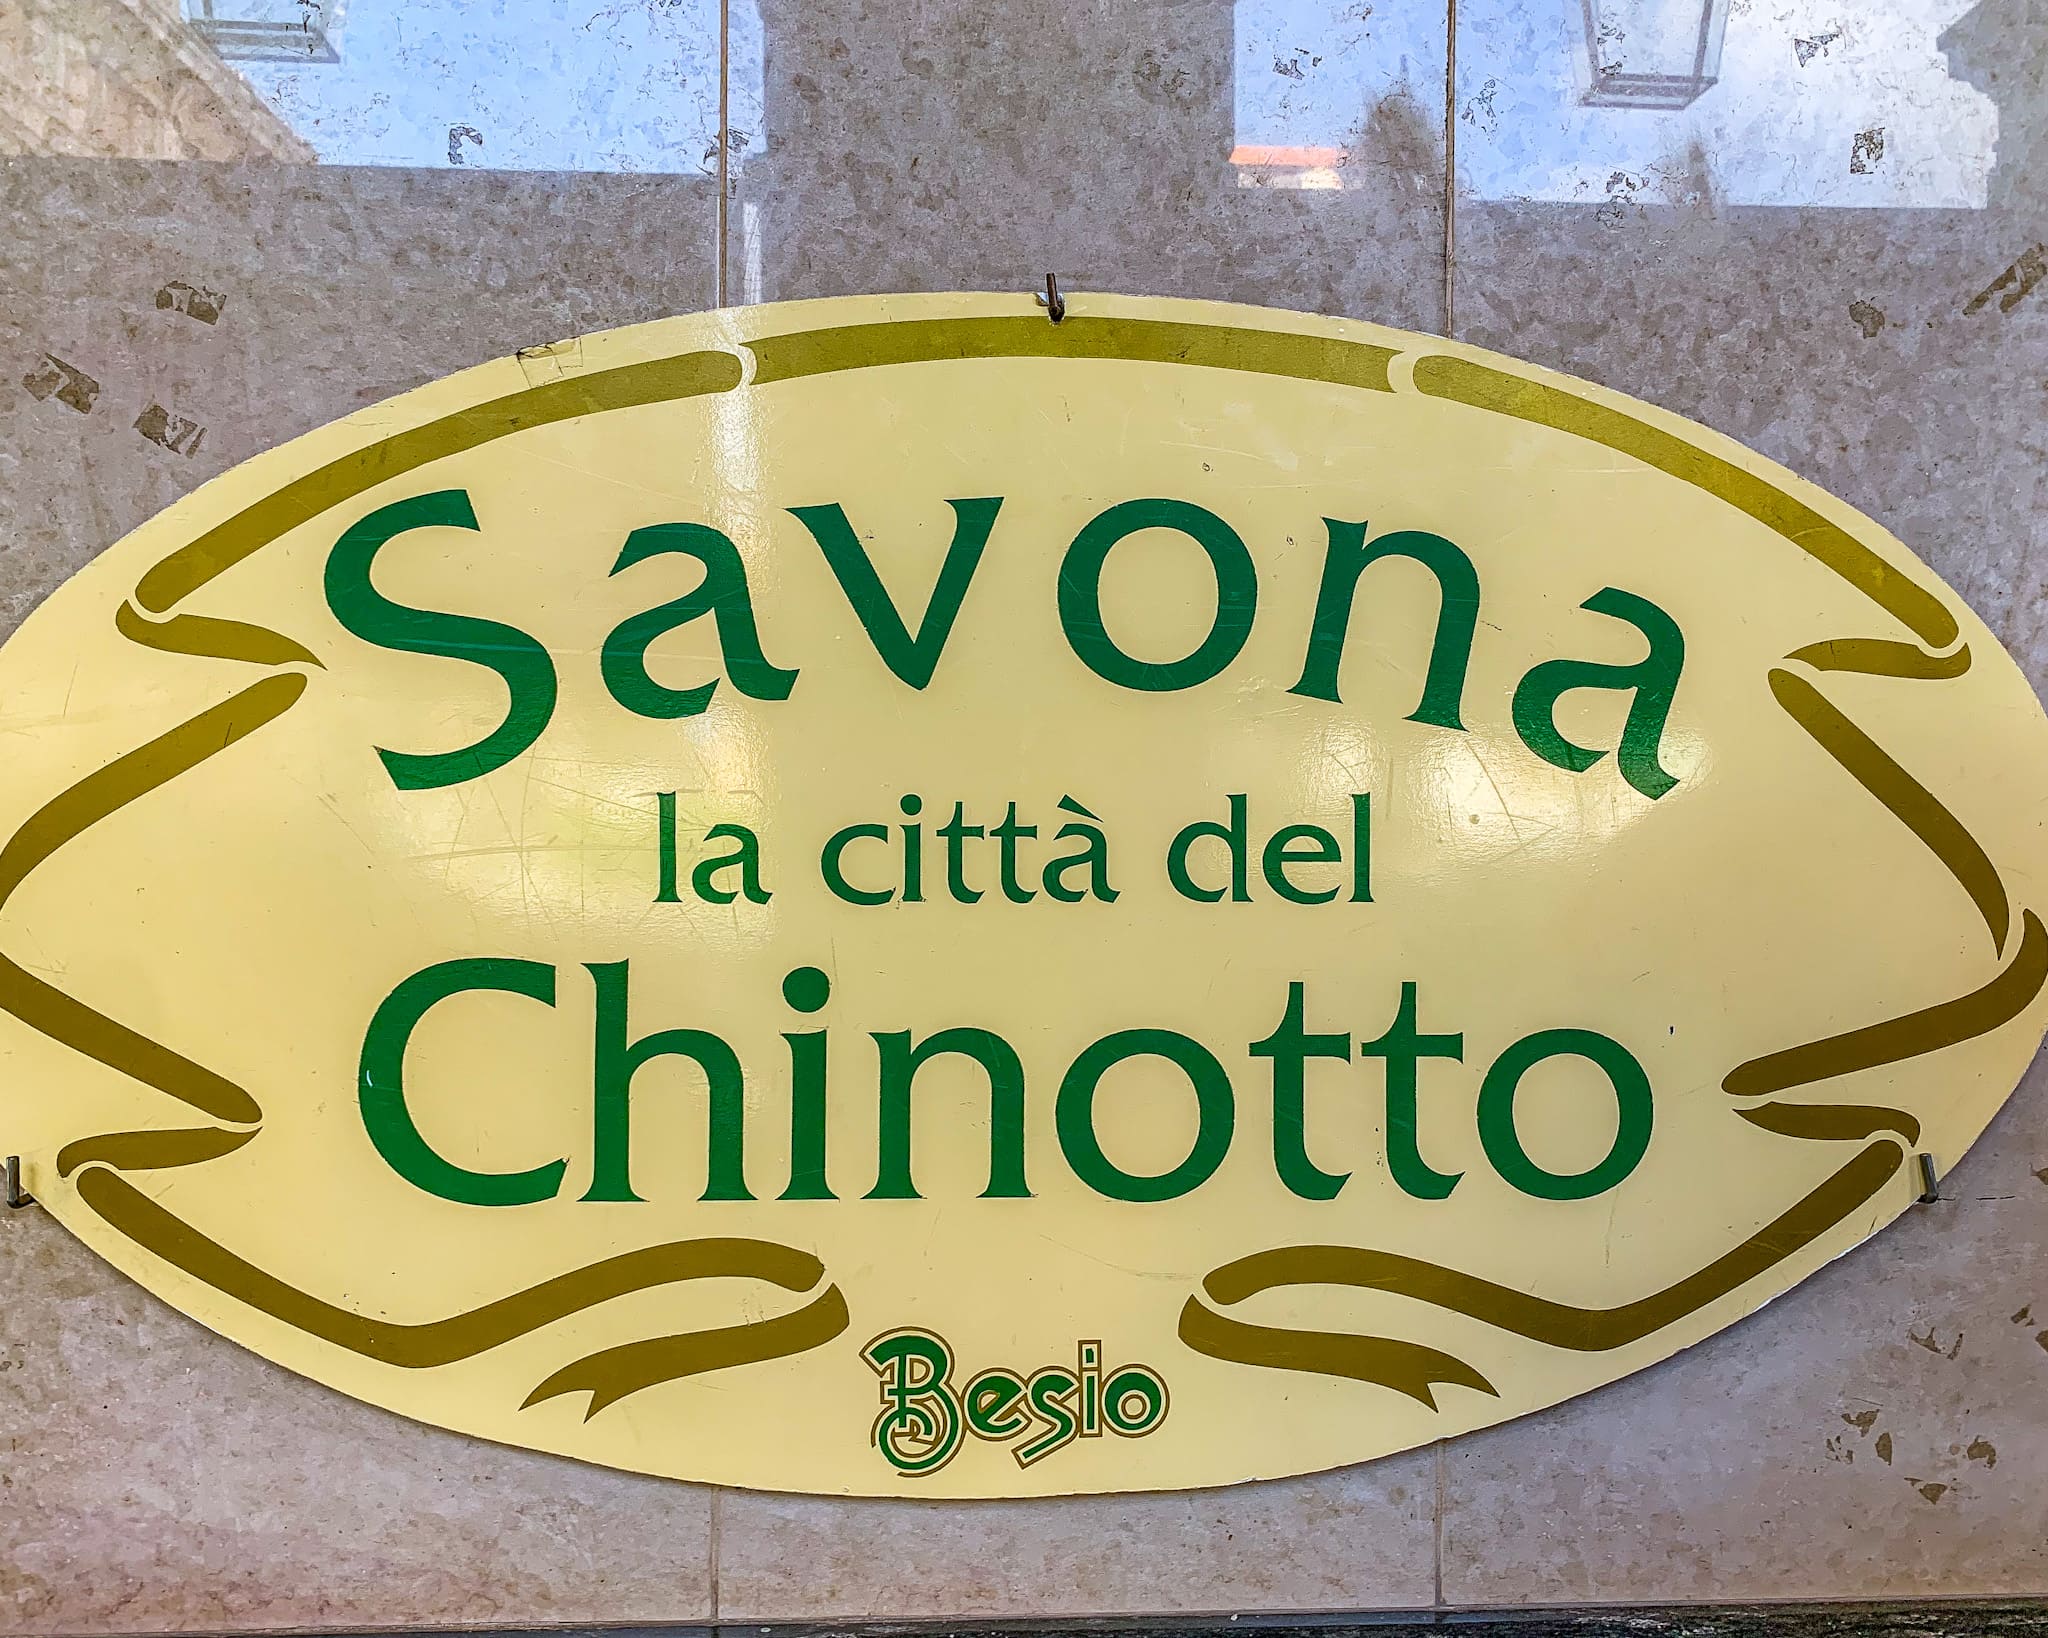 Cosa vedere a Savona, la città del Chinotto